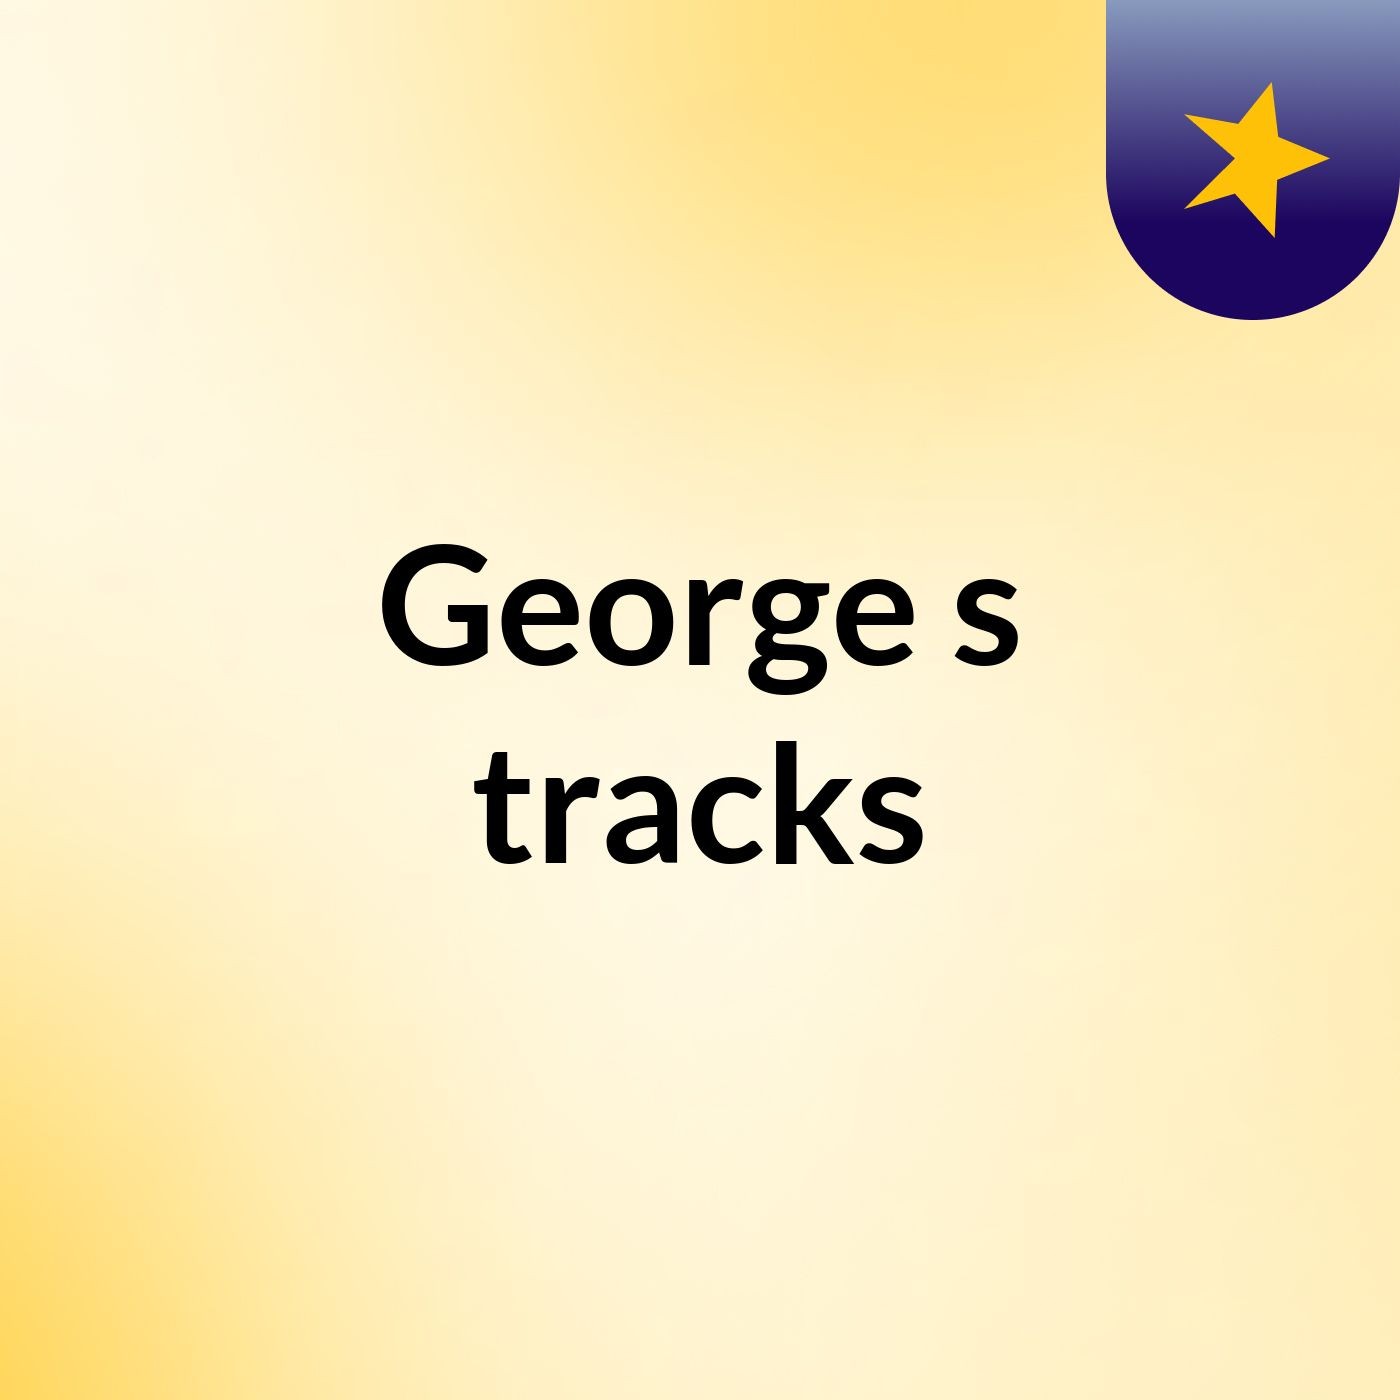 George's tracks